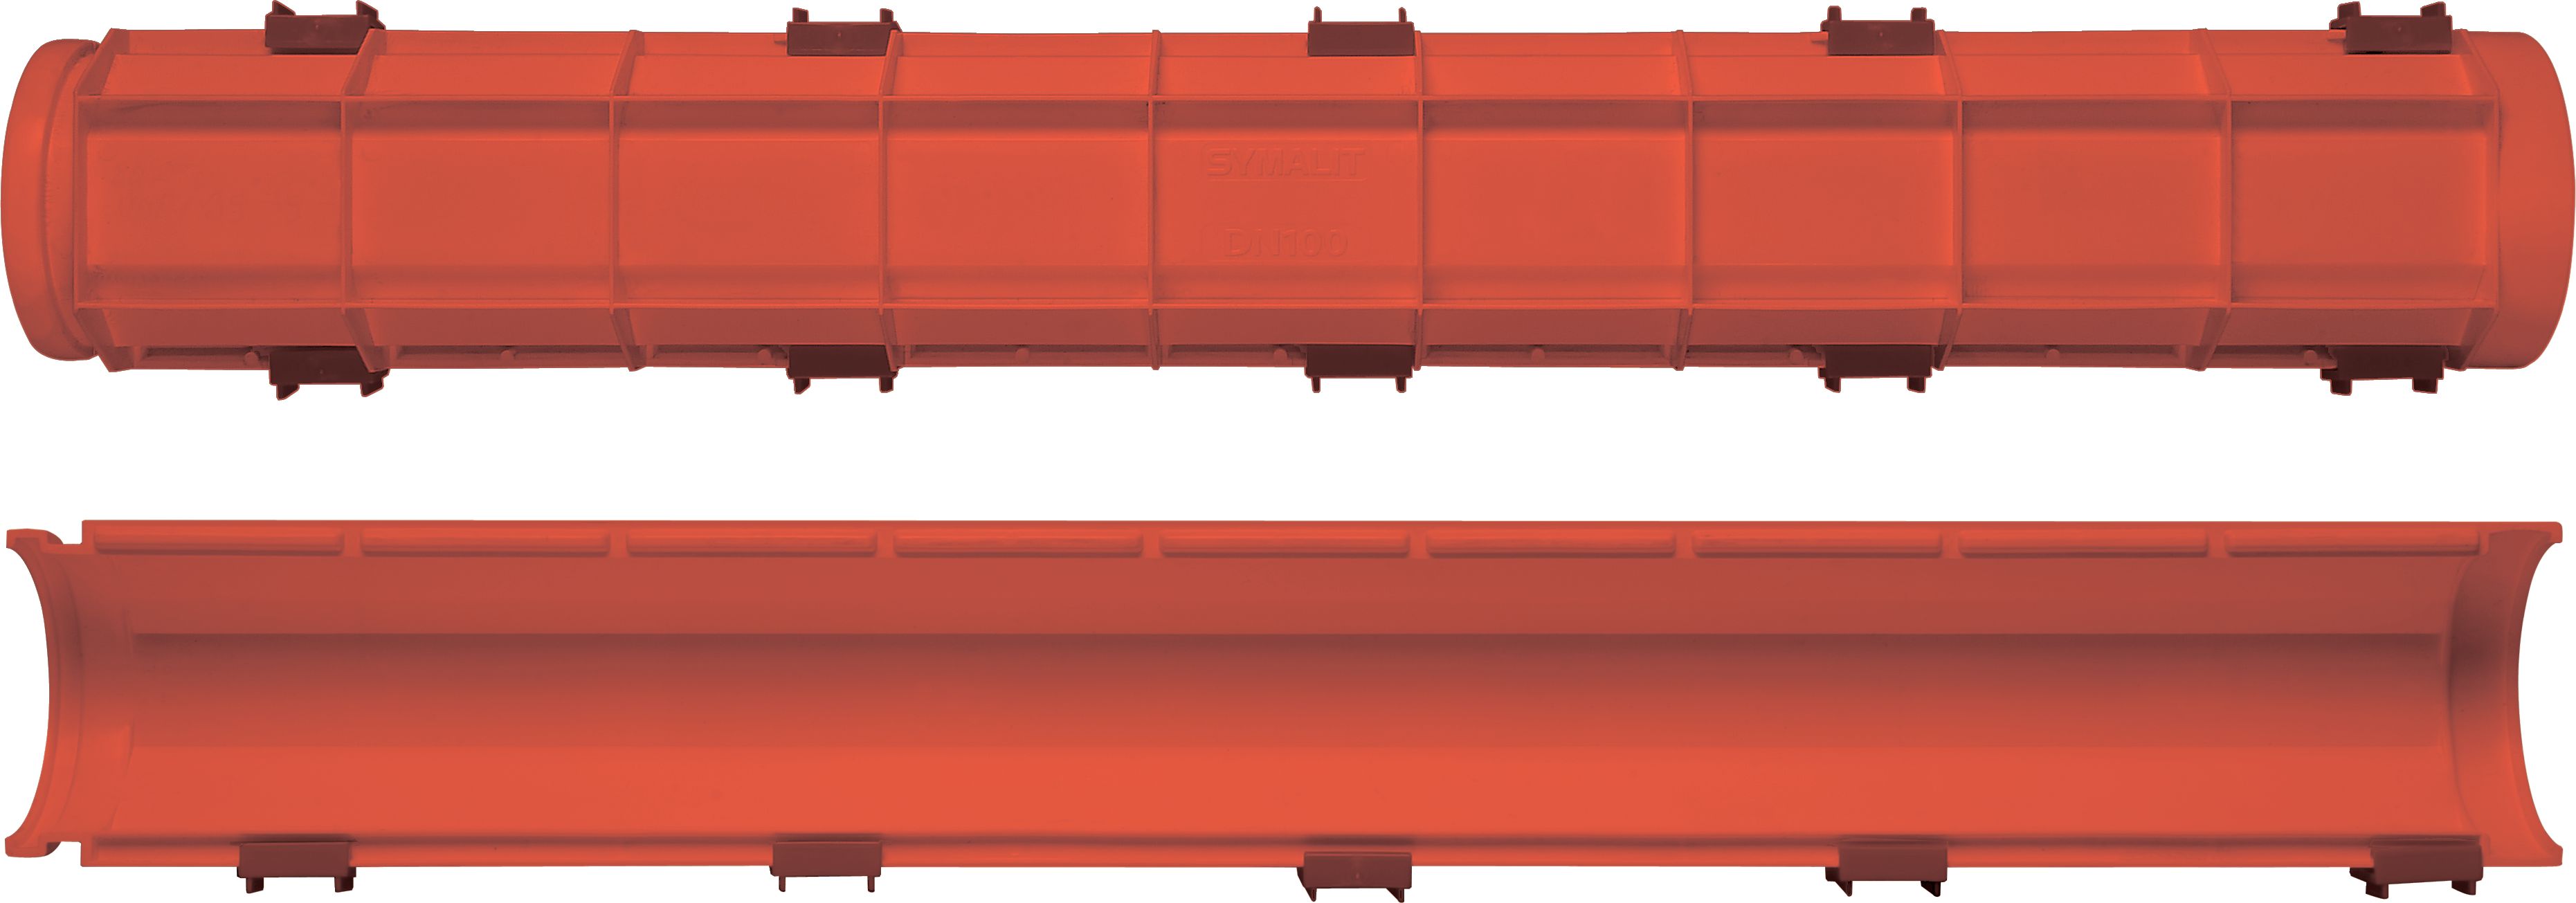 SYSPRO-Kabelhalbschalen HDPE weiss NW: 150mm L:1m inkl. 3 Verschlussklemmen - Kabelschutz Formstücke netto